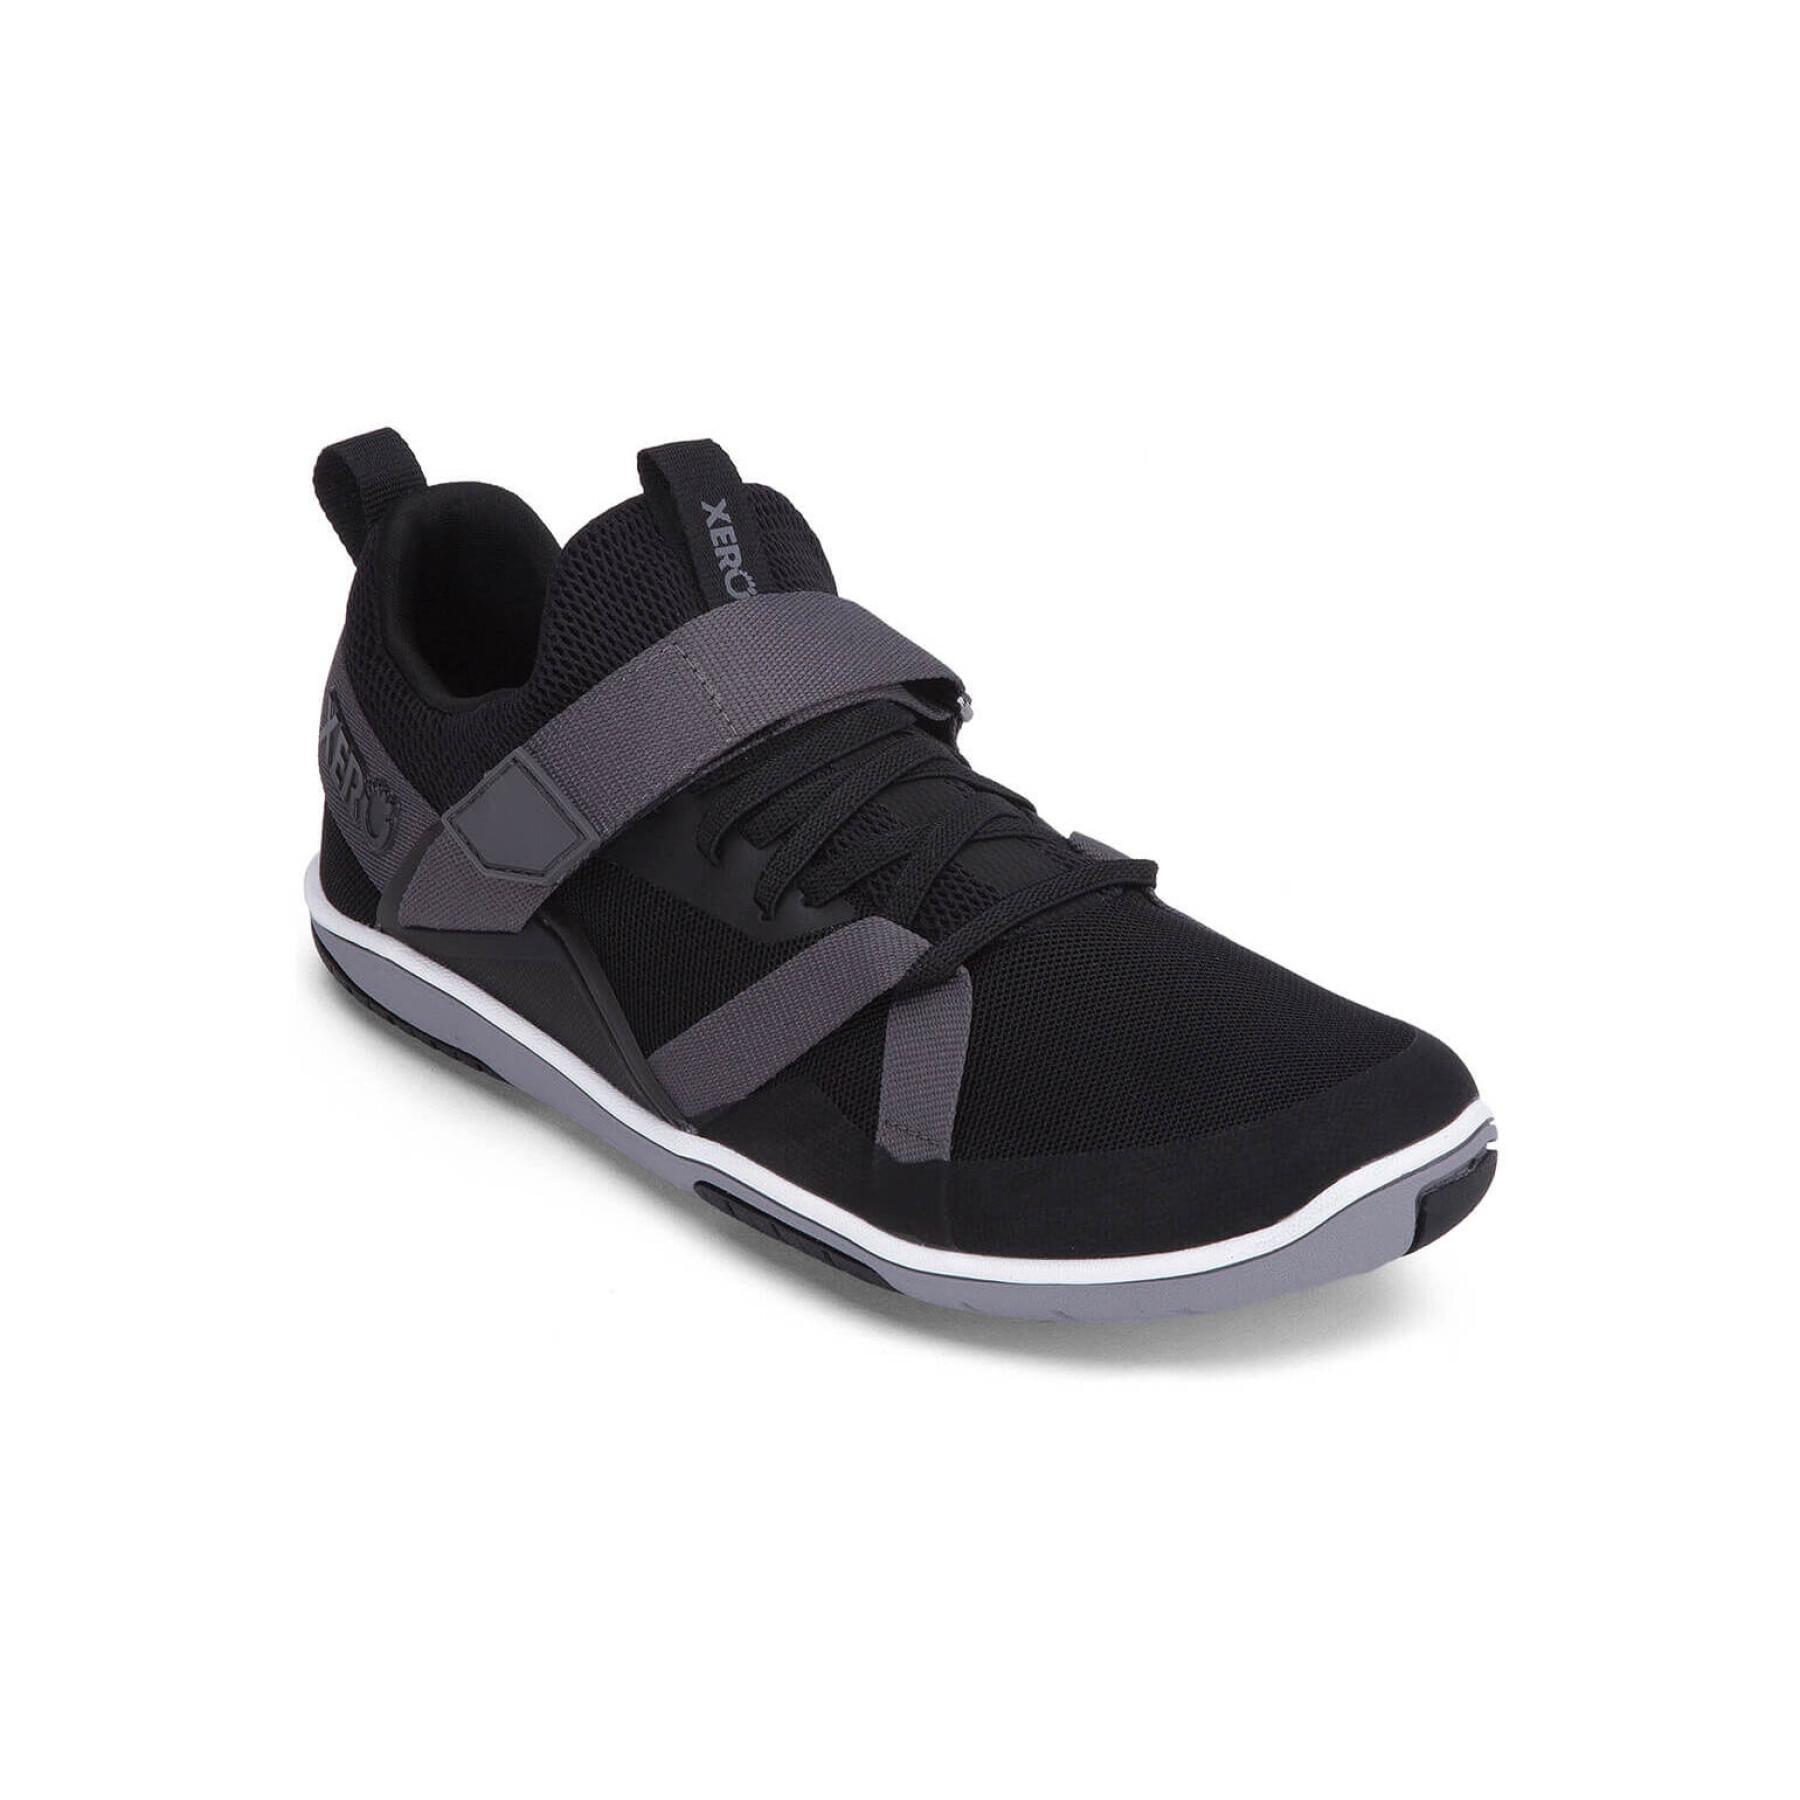 Chaussures de cross training Damen Xero Shoes Forza Trainer